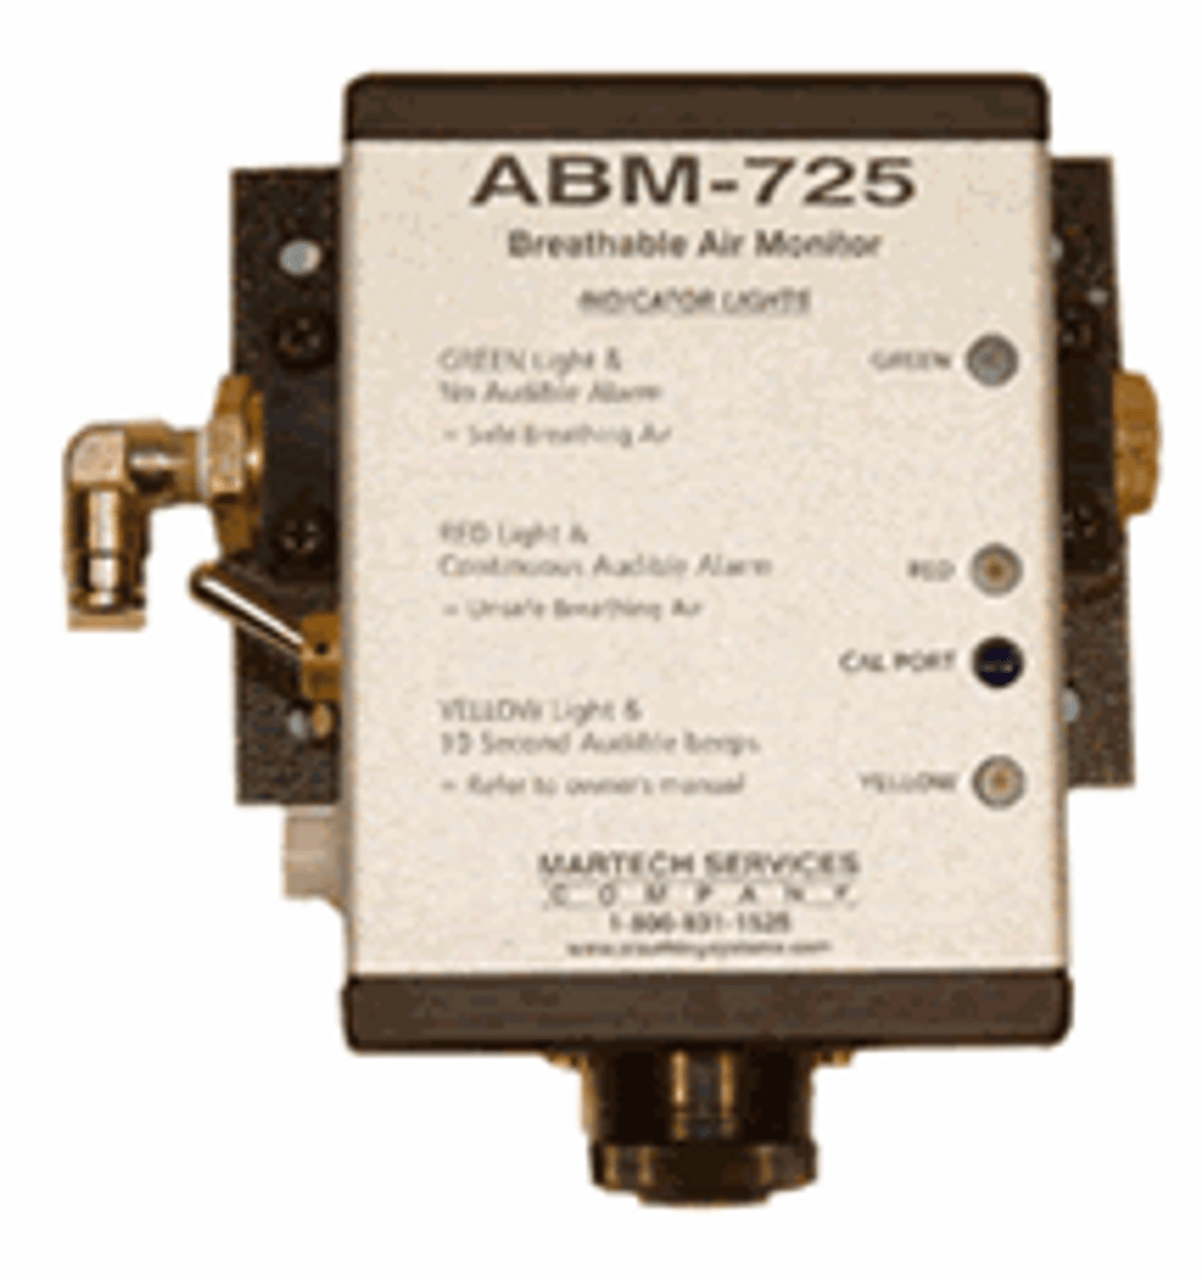 Martech 74725 Co Monitor ABM 725